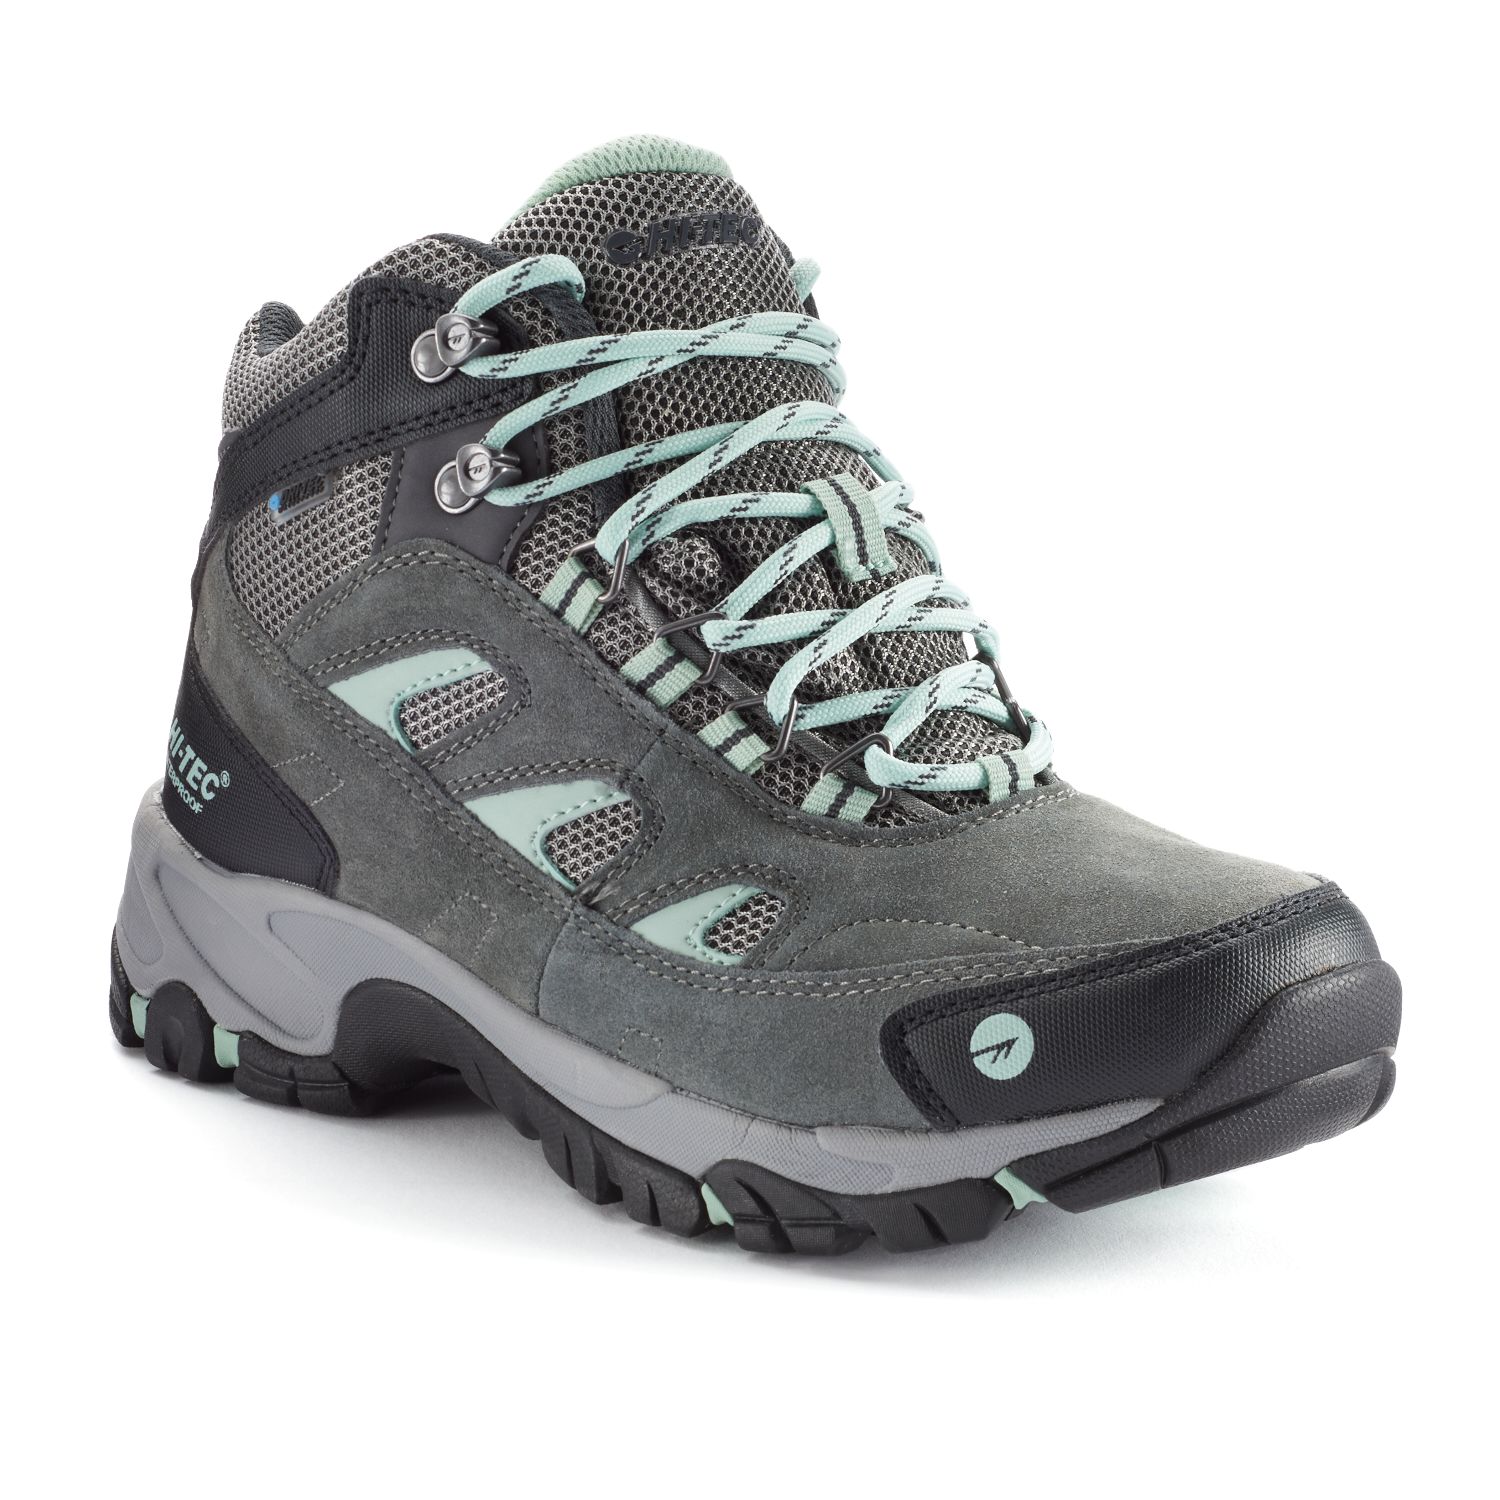 hi tec women's hiking shoes